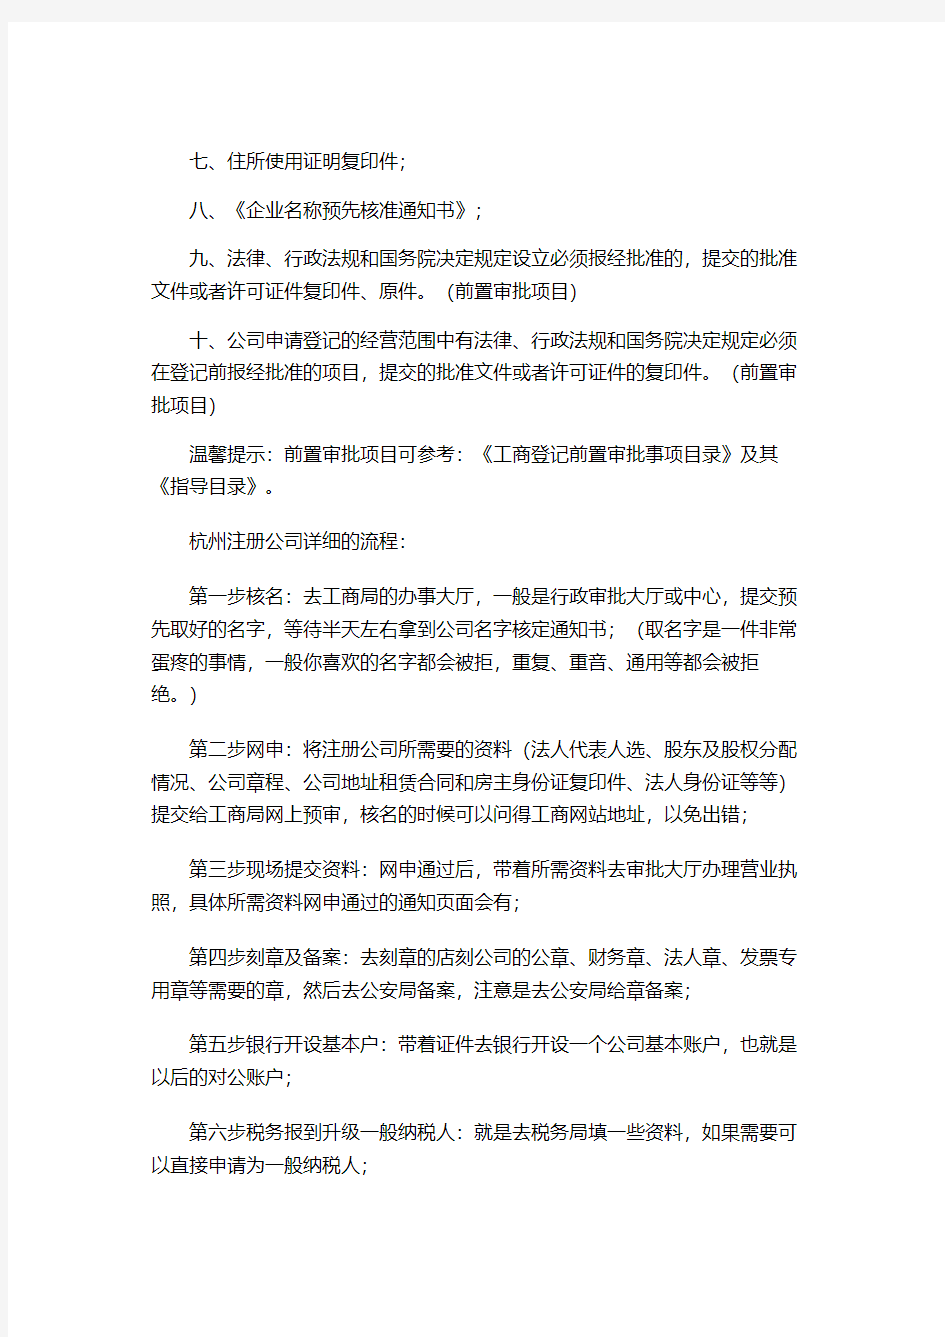 杭州生物科技公司营业执照办理流程